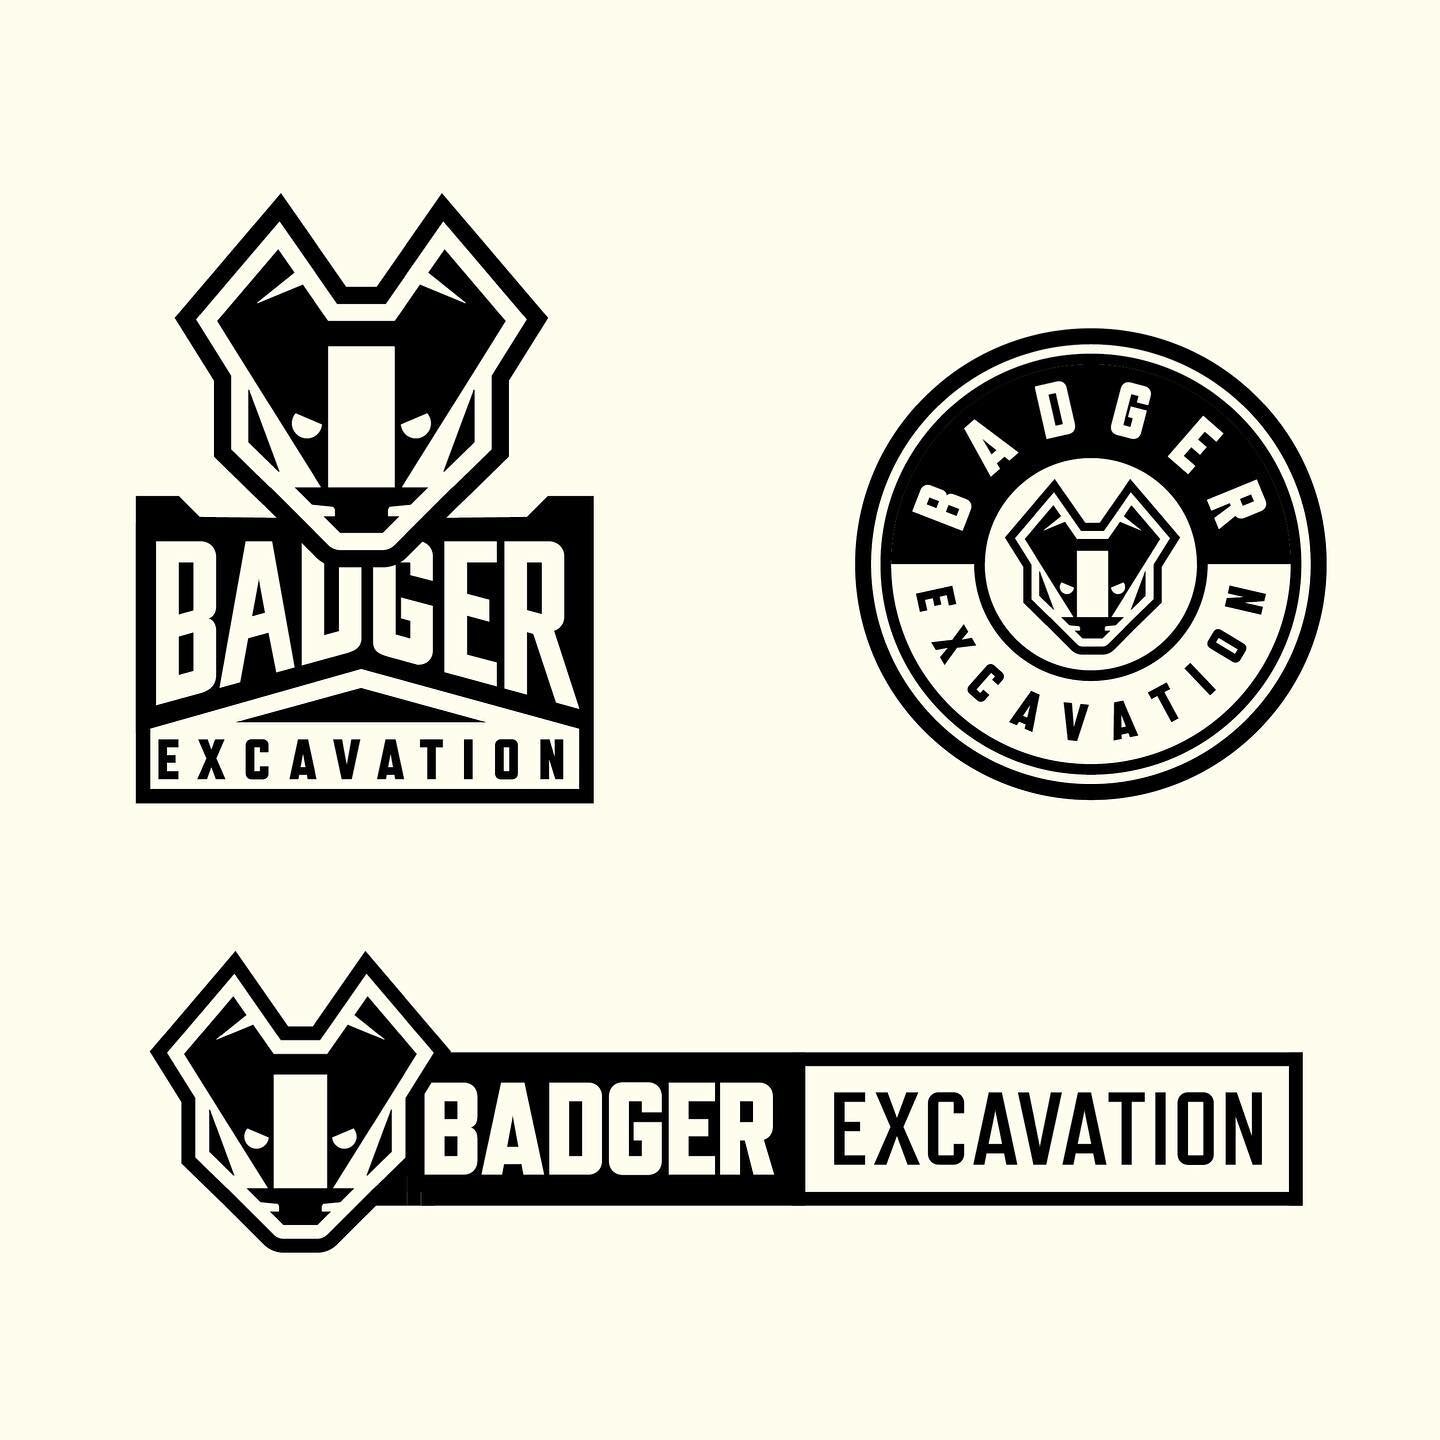 Unused concepts for Badger Excavation 🤫 
&mdash;&mdash;
@graphicreflectionssticker 
&mdash;&mdash;
&bull;
&bull;
&bull;
&bull;
#badgedesigns #typographydesign #branding #bremerton #construction #excavation #bluecollar